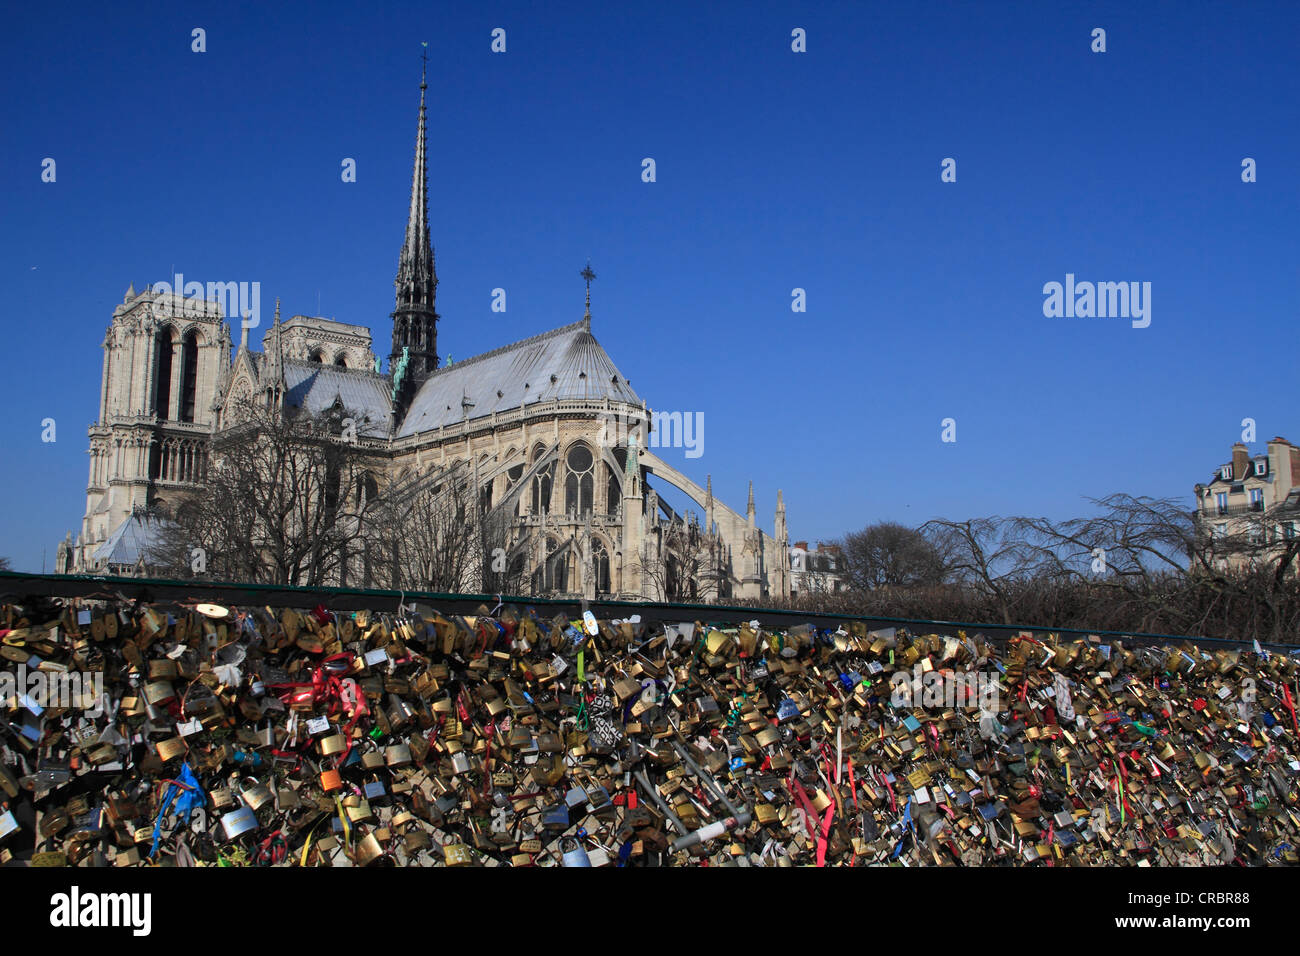 Cadenas sur le pont Pont de l'Archevêché, la cathédrale de Notre-Dame, Paris, France, Europe Banque D'Images